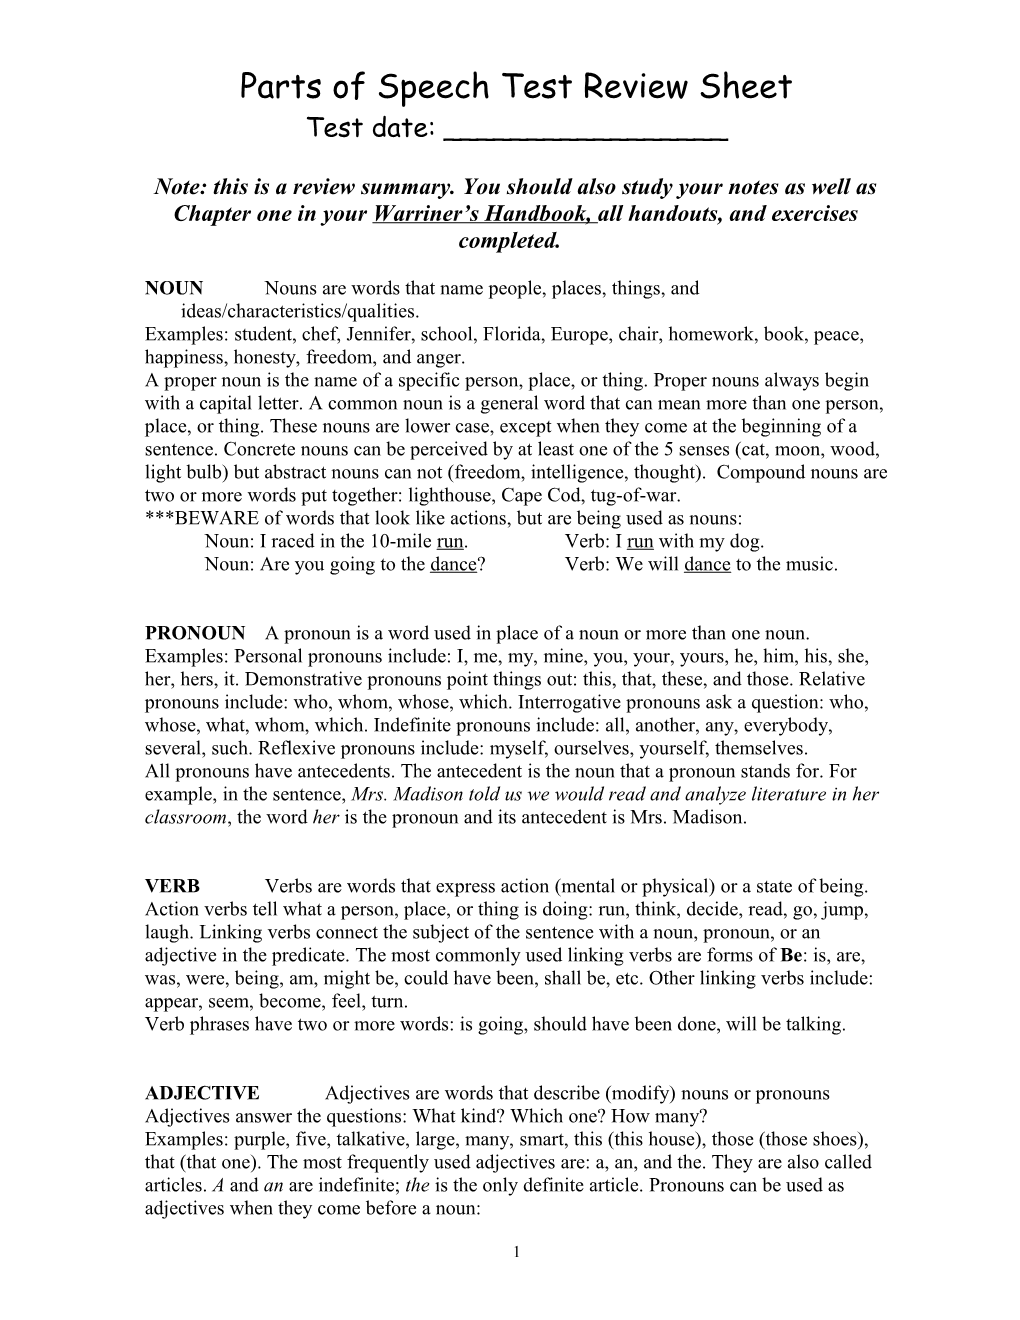 Parts of Speech Test Review Sheet